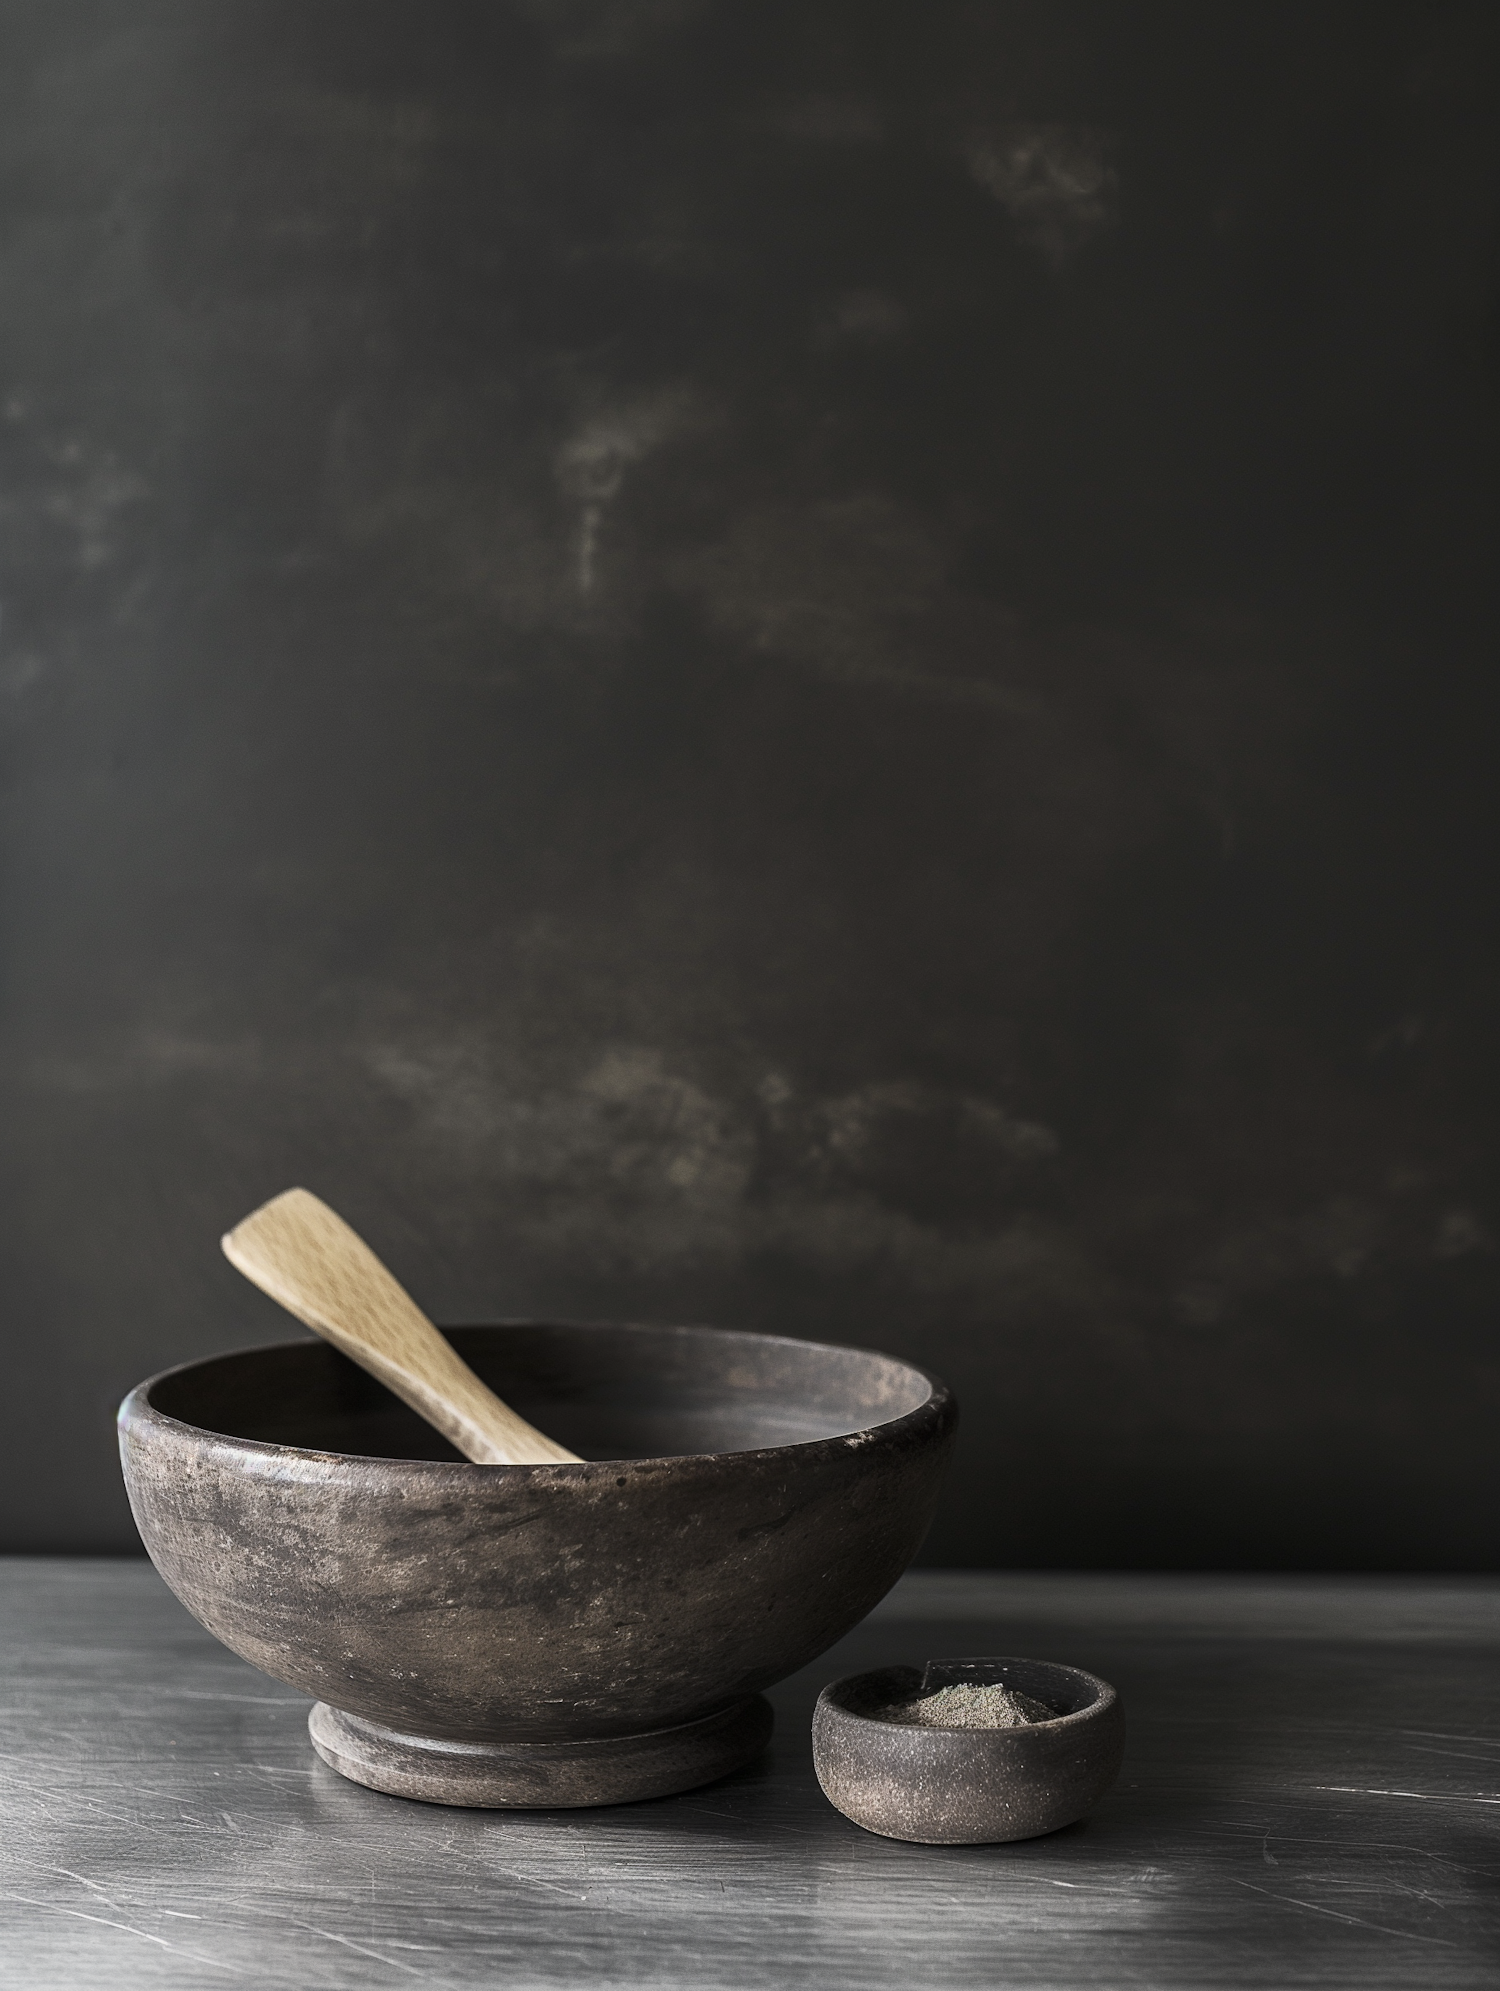 Rustic Ceramic Bowls Still Life